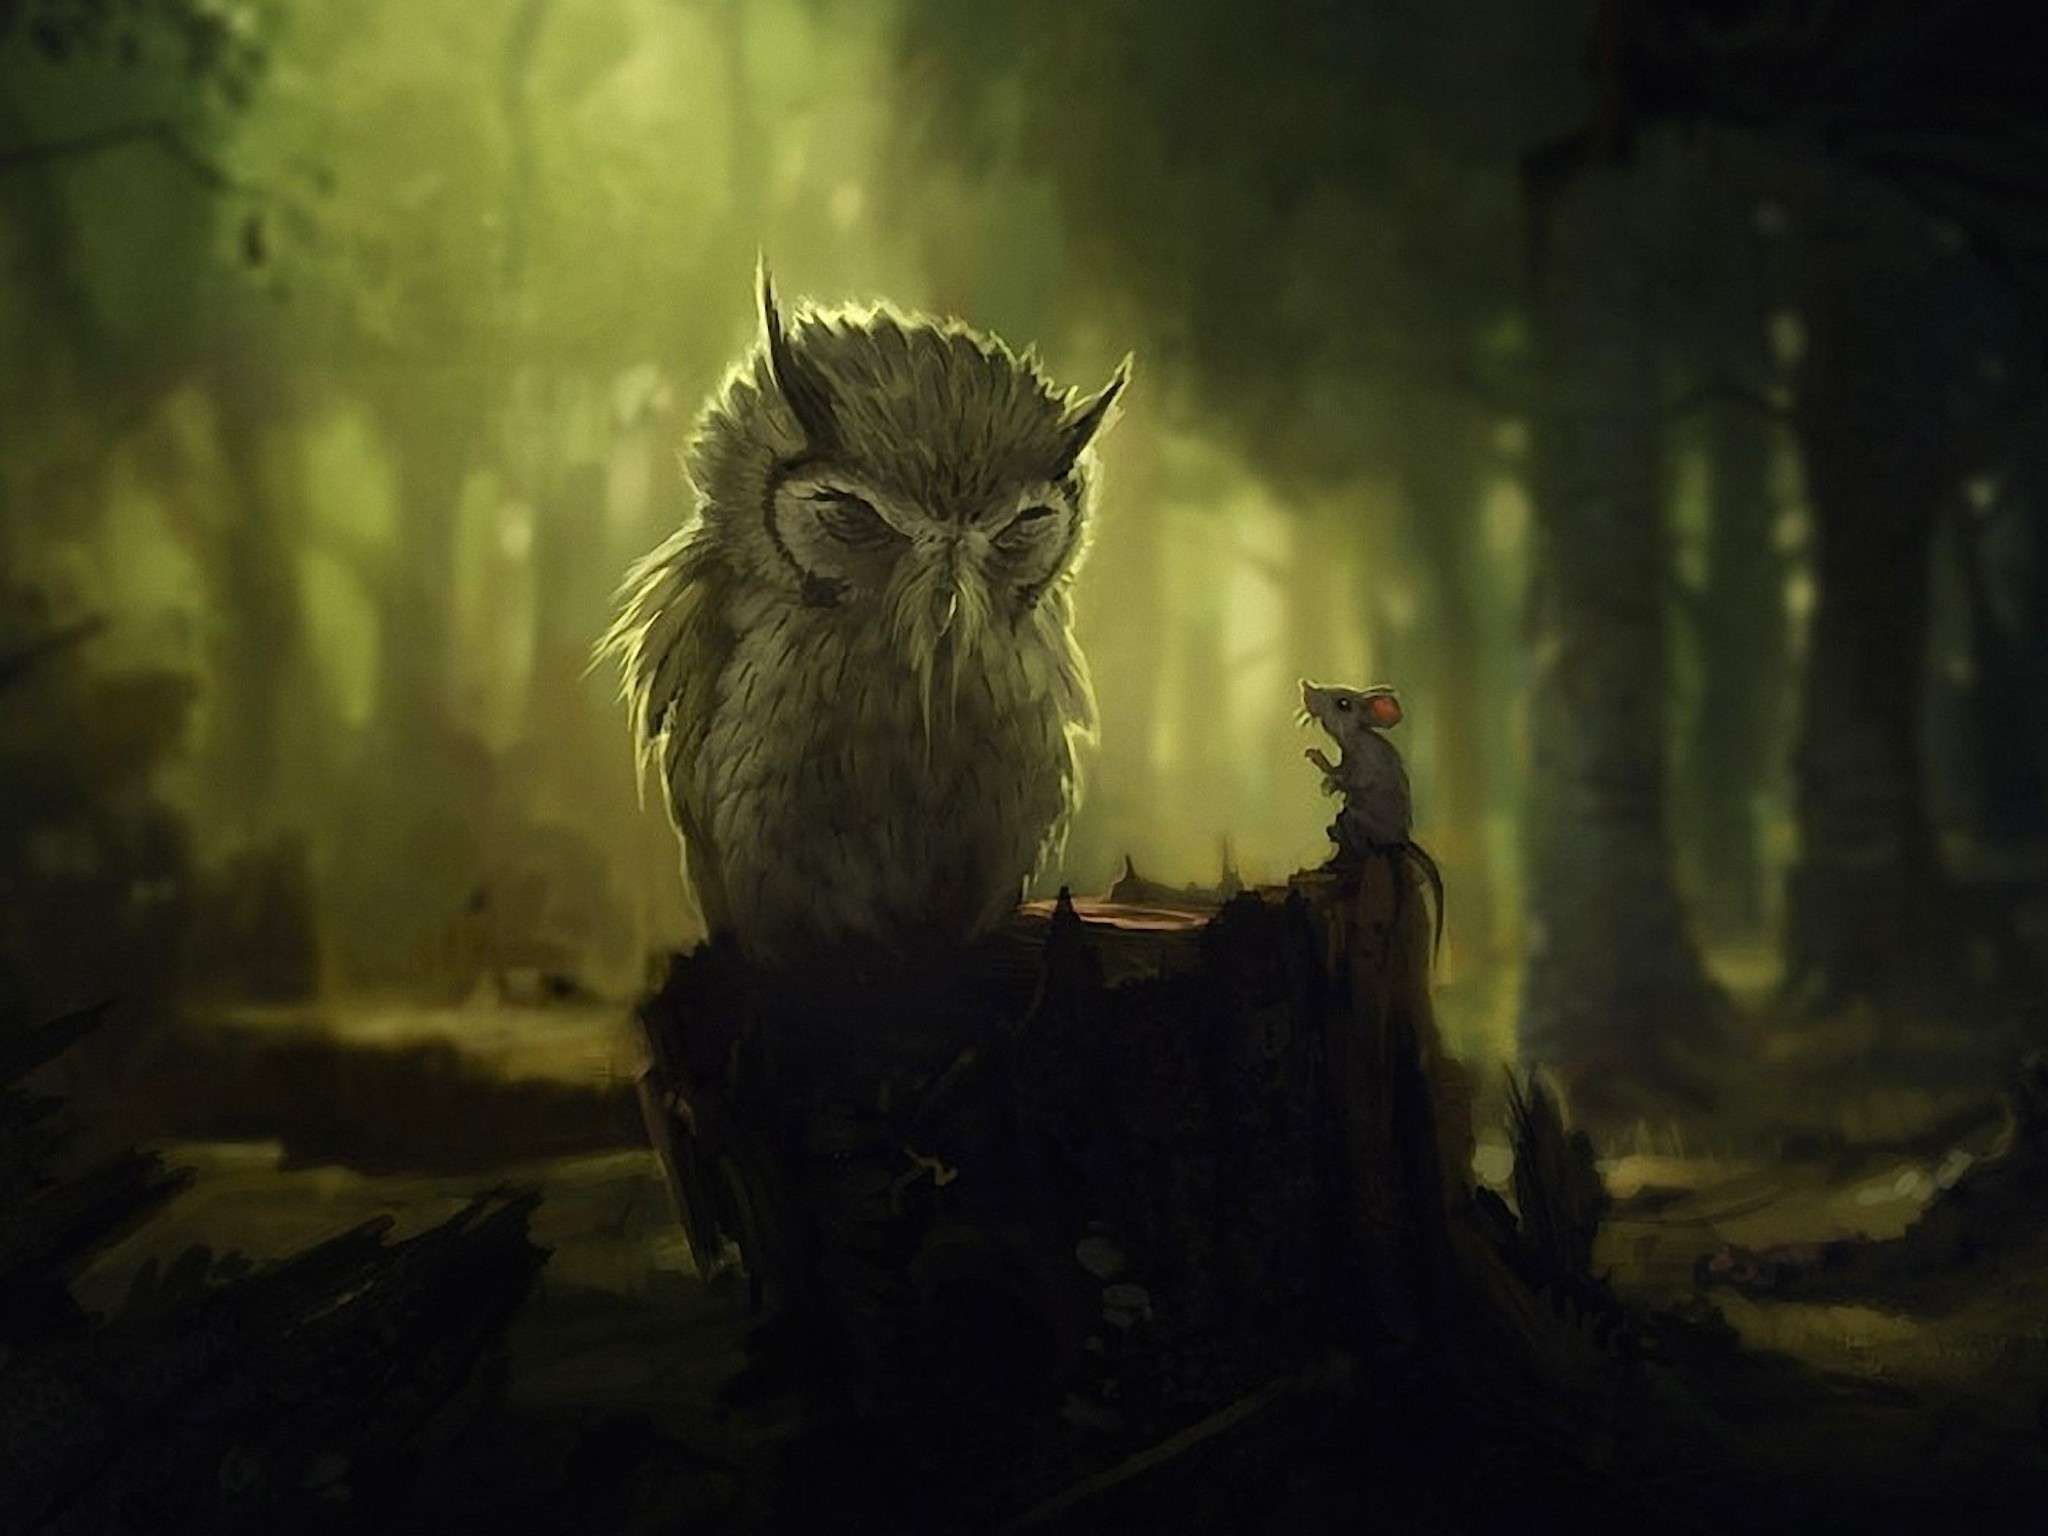 Dark Fantasy Owl Wallpaper